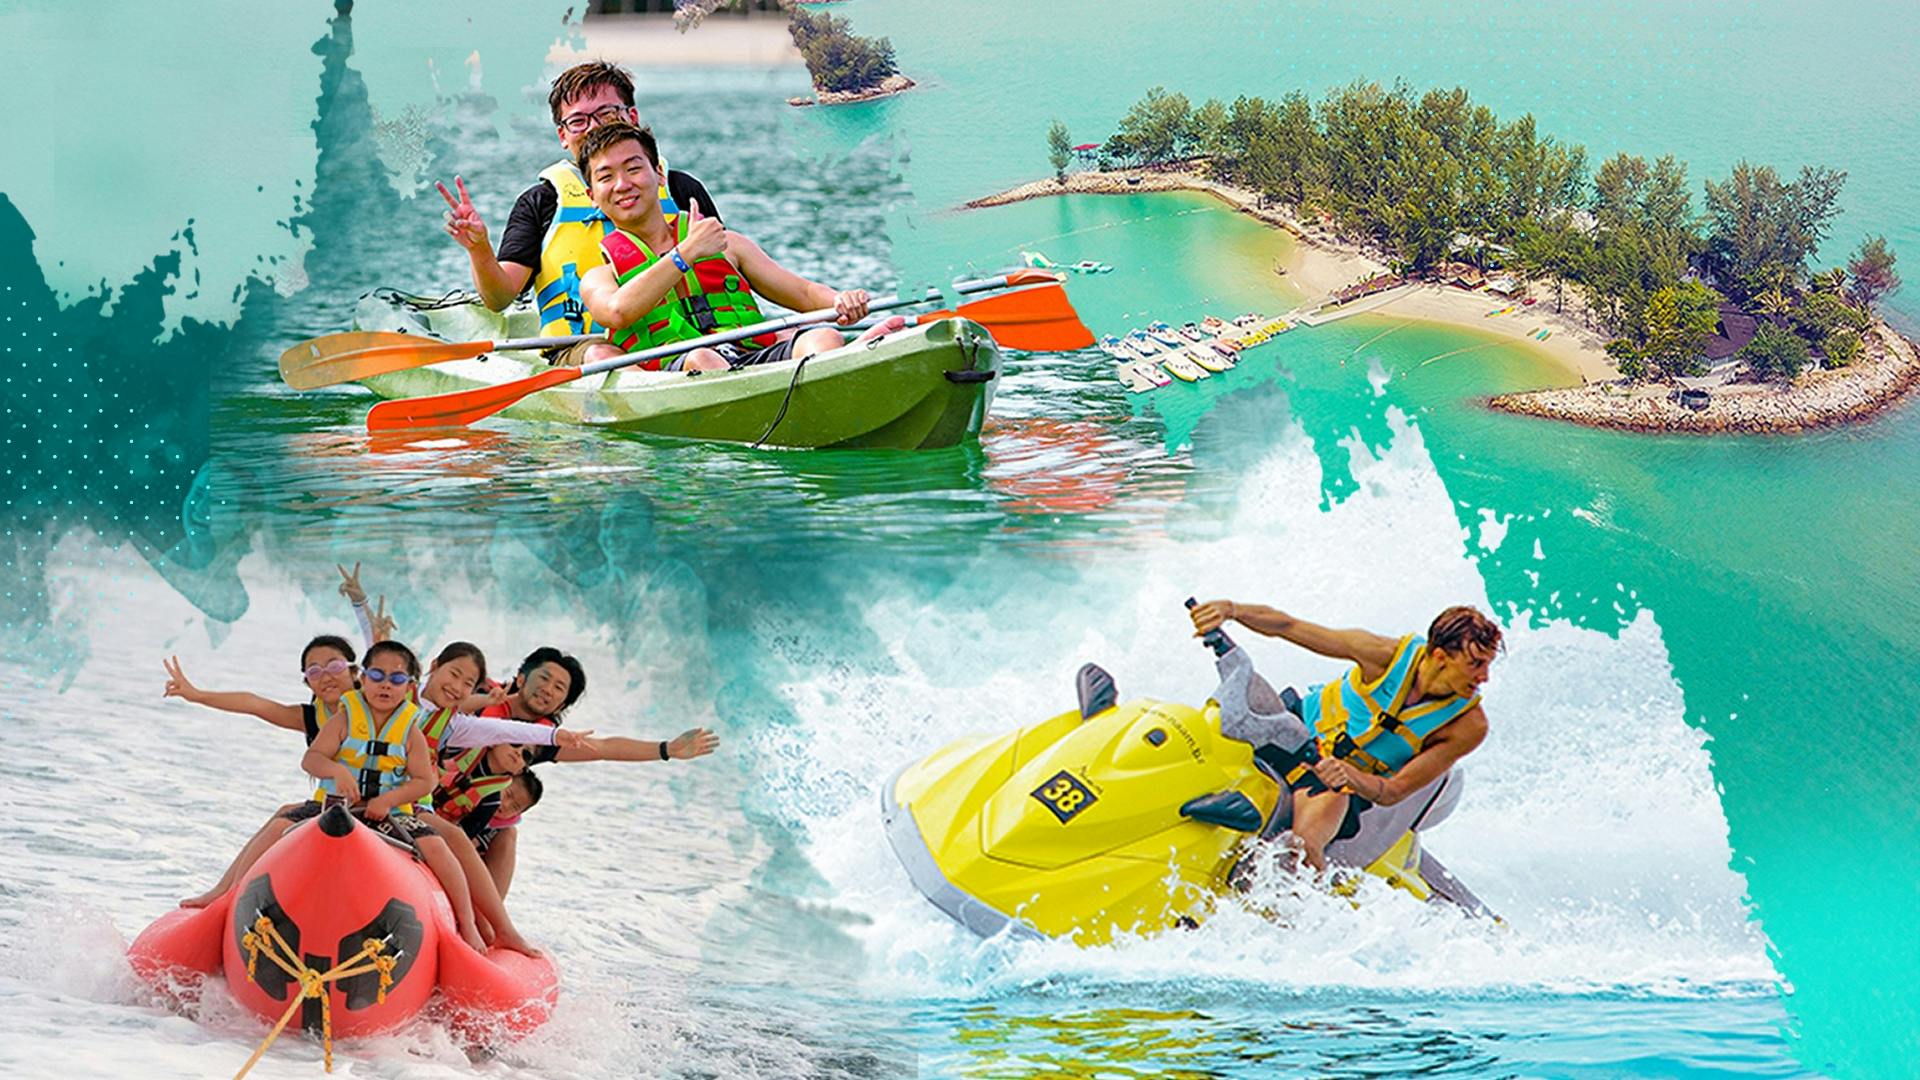 Jet ski and banana boat or 30 minutes Kayaking at Paradise 101 Musement